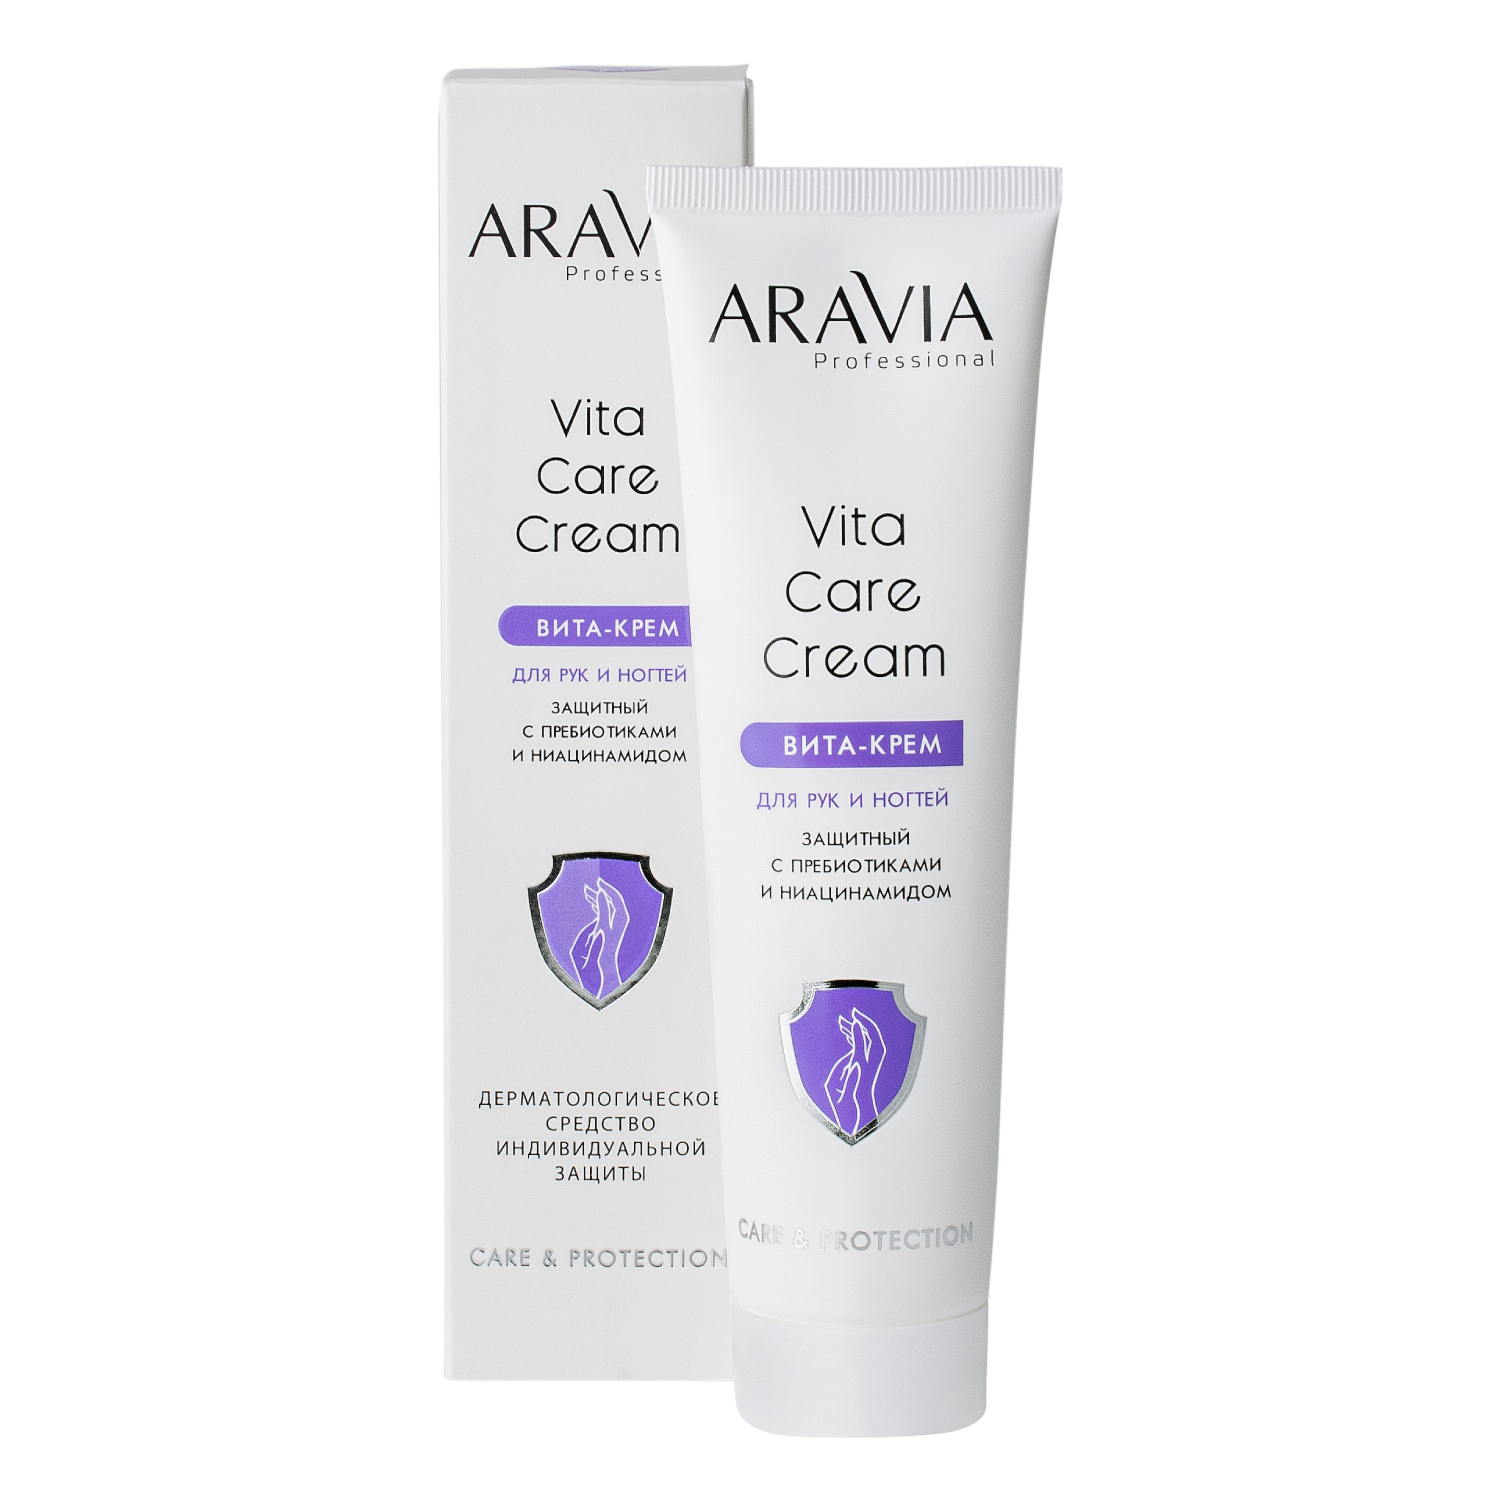 AV Вита-крем для рук и ногтей защитный Vita Care Cream с пребиотиками и ниацинамидом, 100 мл